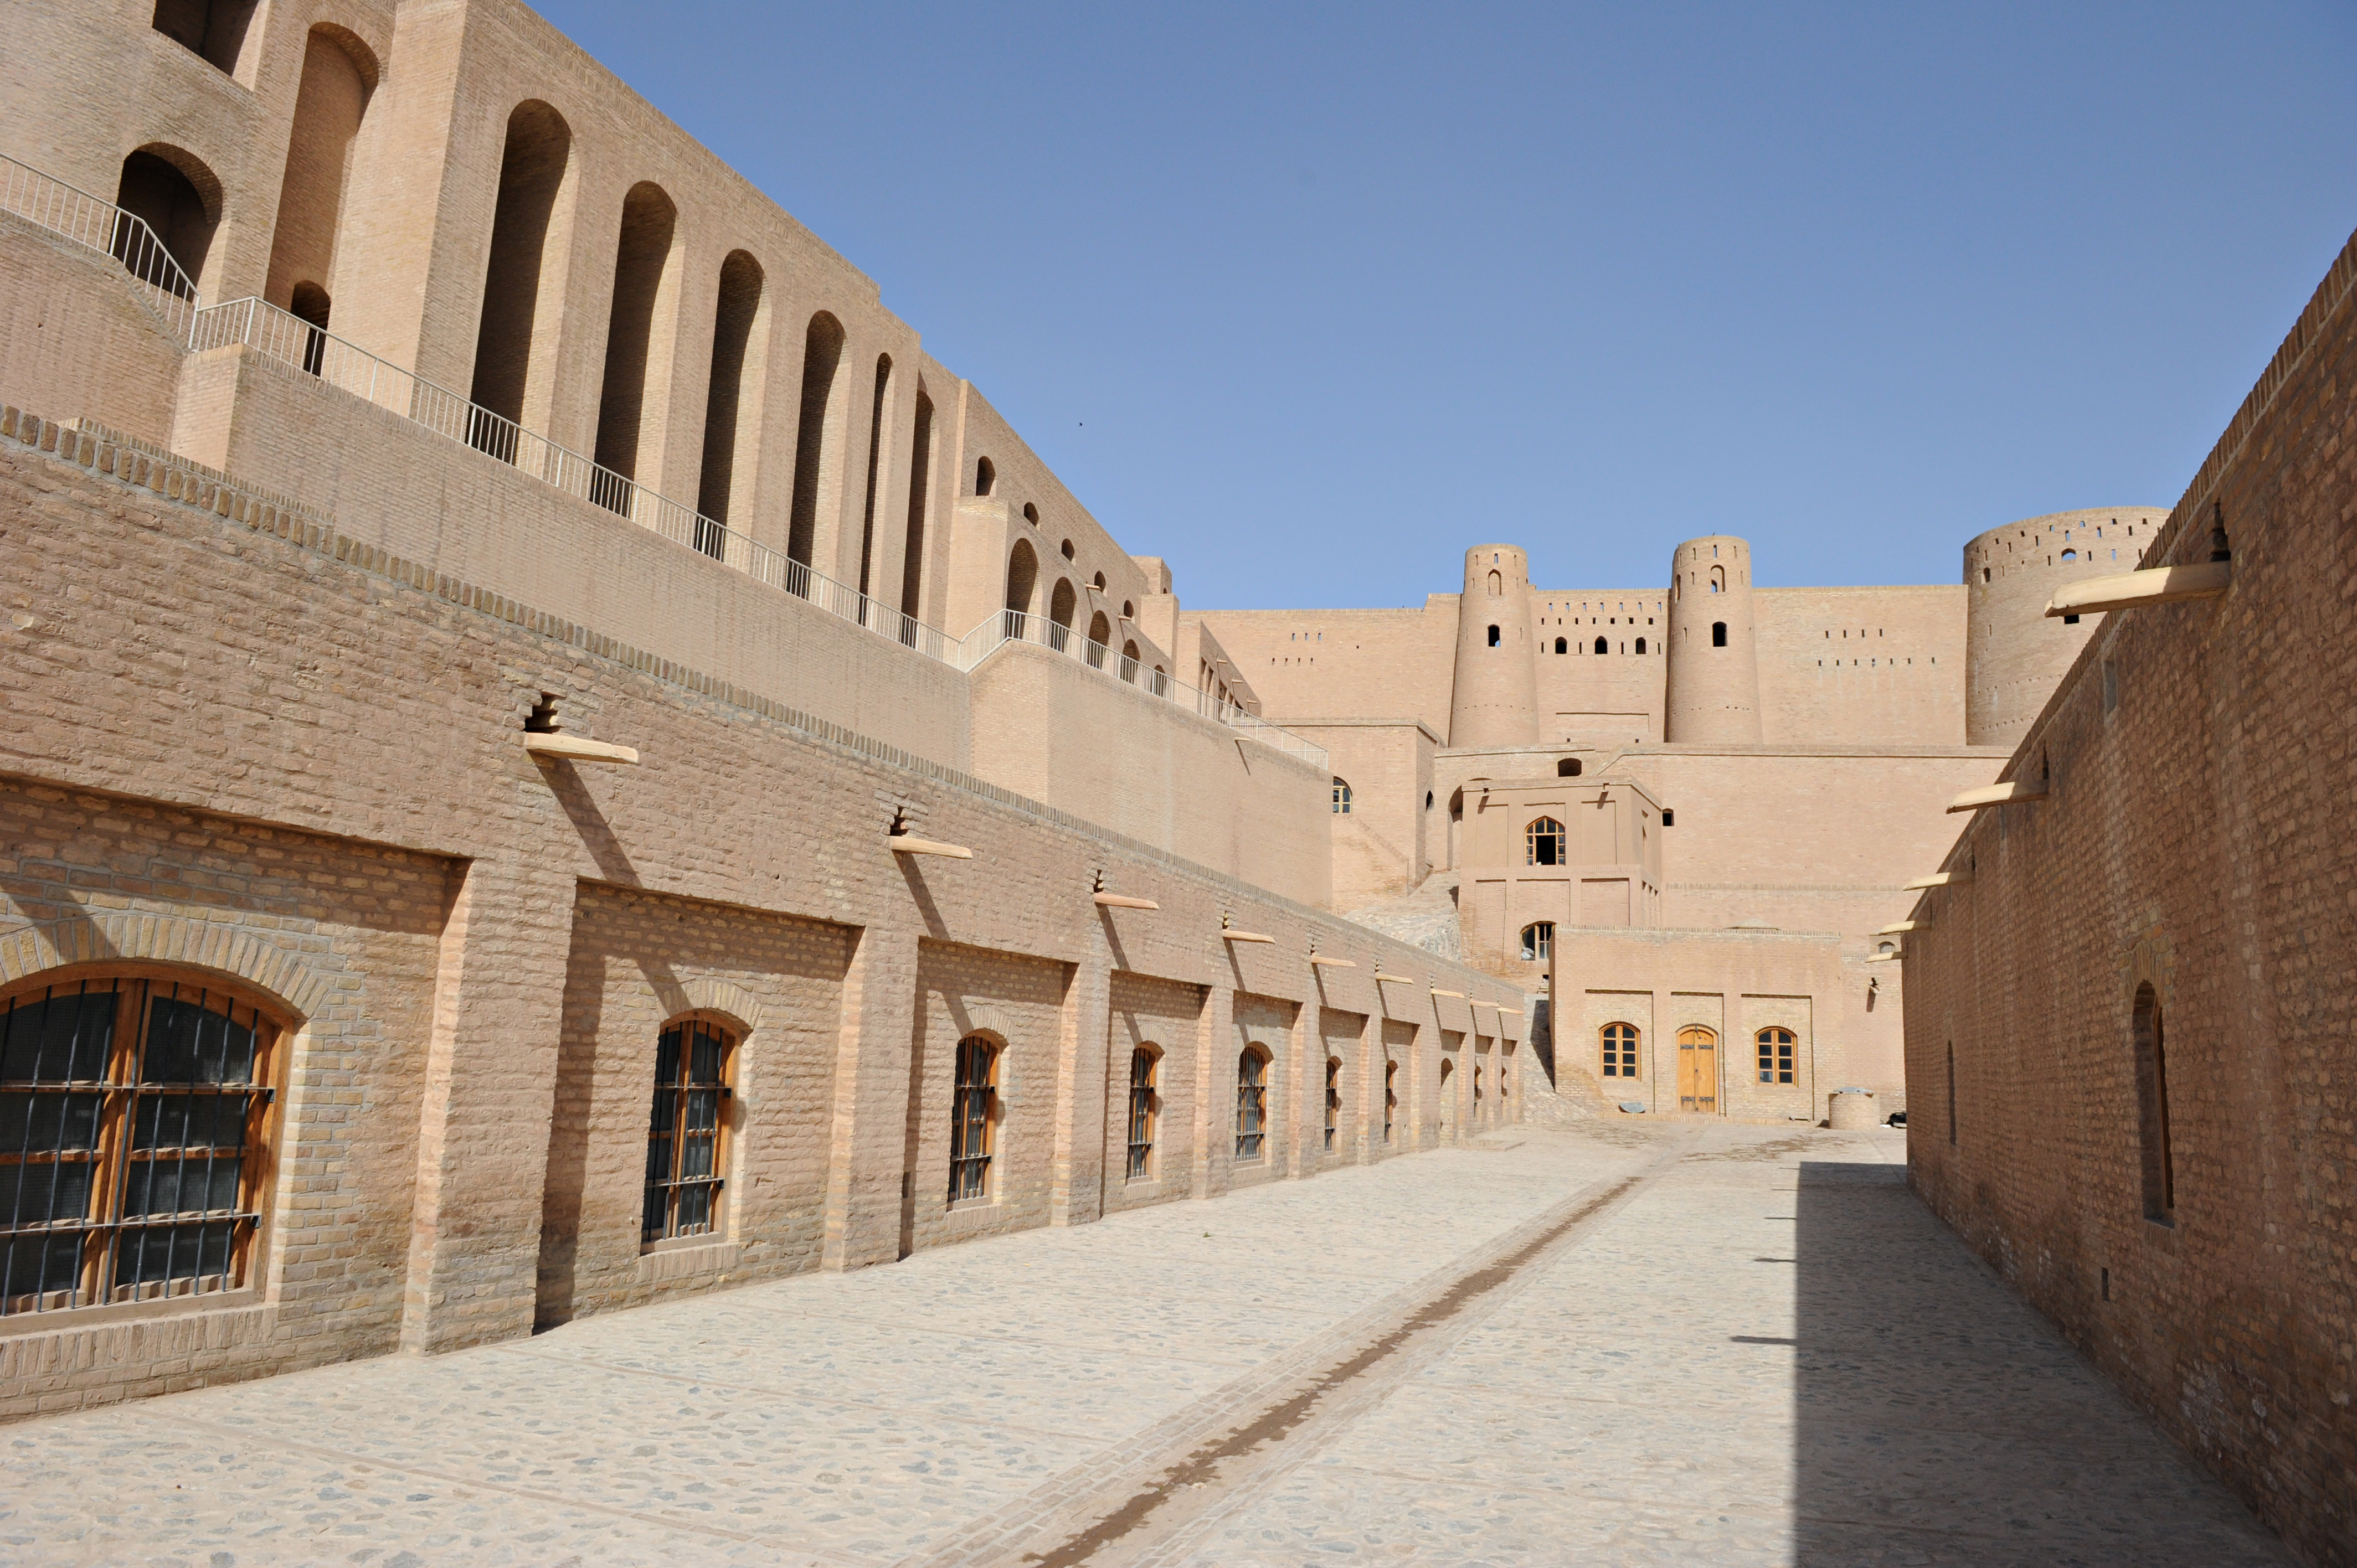 Pathway_inside_the_citadel_of_Alexander_in_Herat.jpg